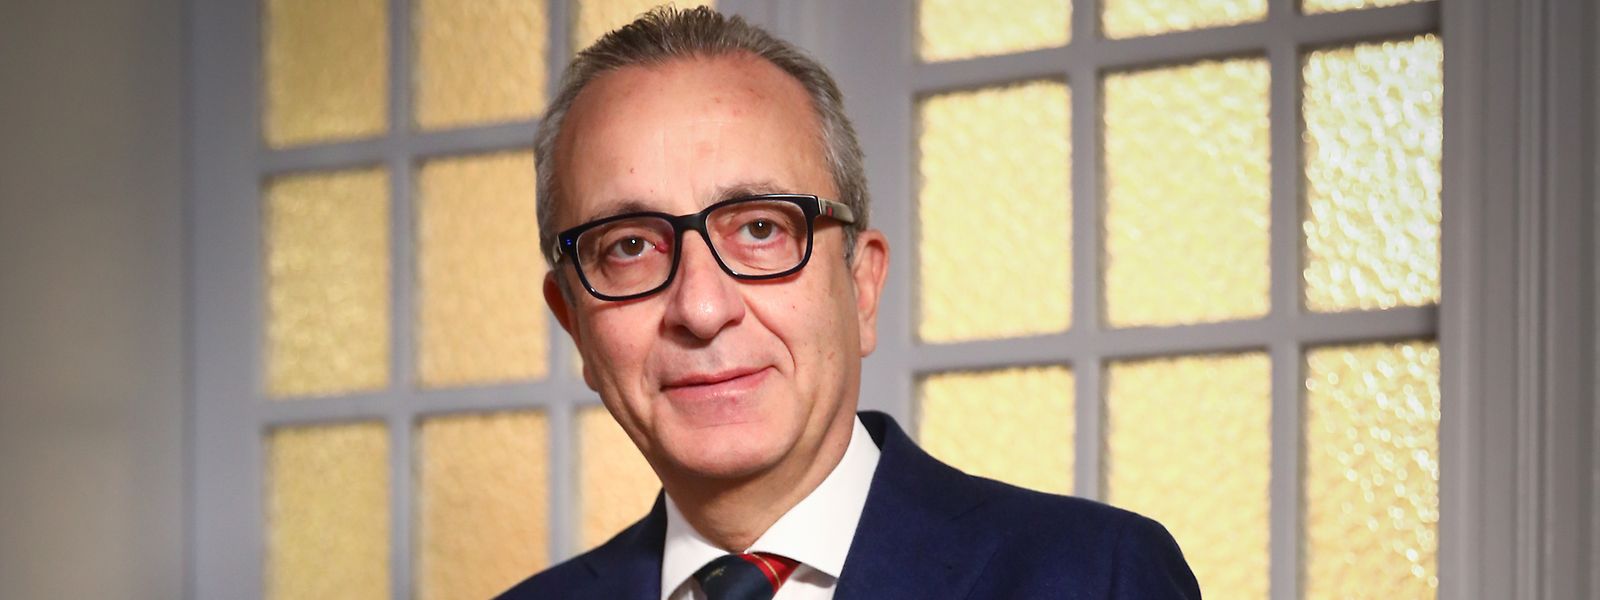 Fabio Morvilli, président de la Chambre de commerce italo-luxembourgeoise, ne voit pas de péril pour les affaires.